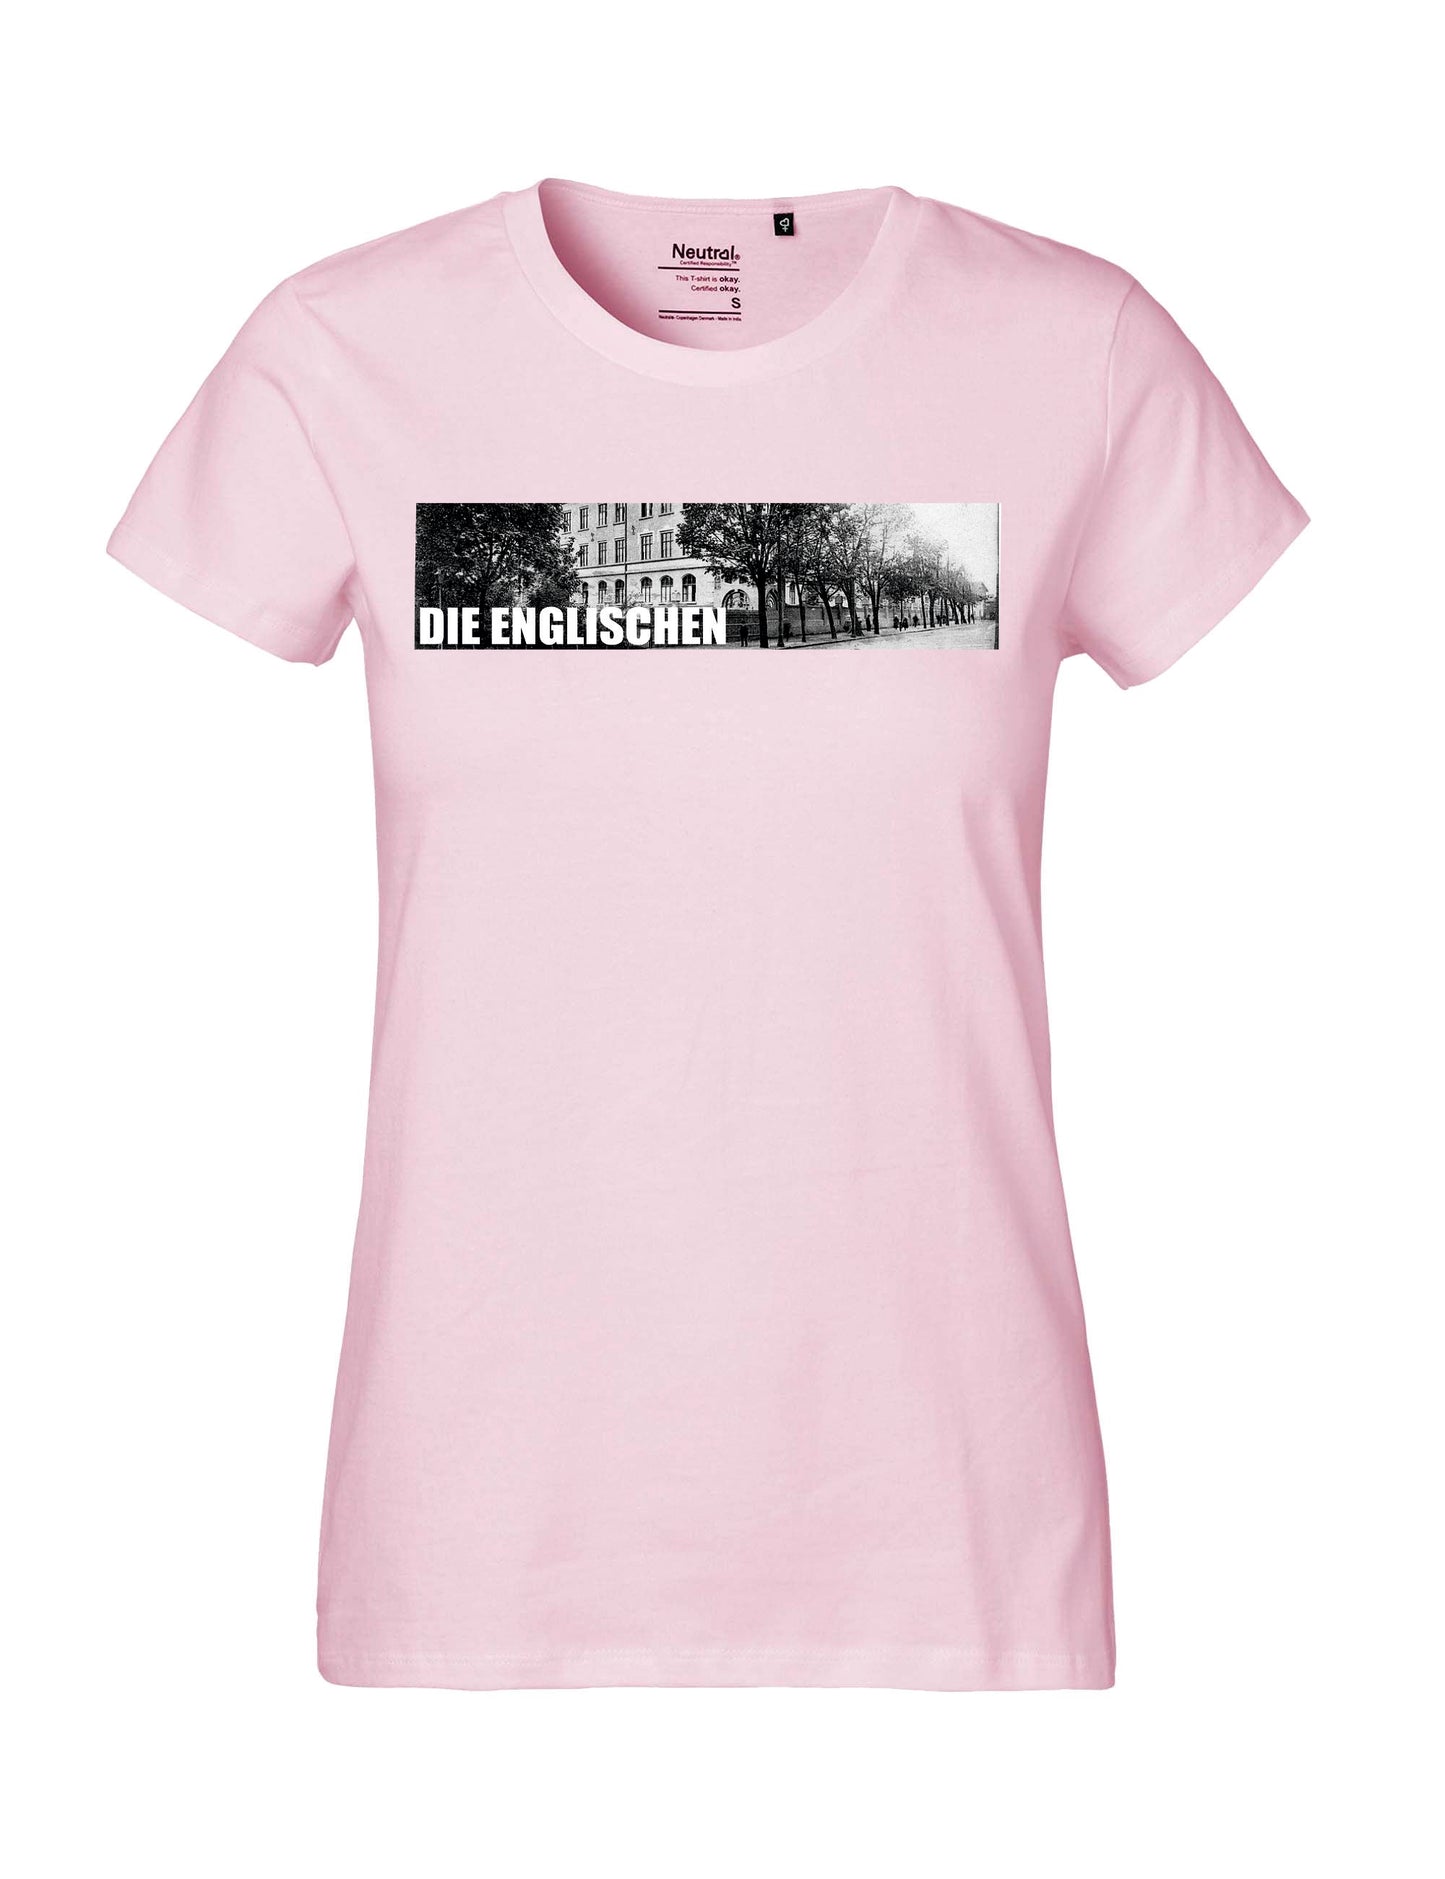 Shirt mit Brustprint "Schulgebäude" - Damen